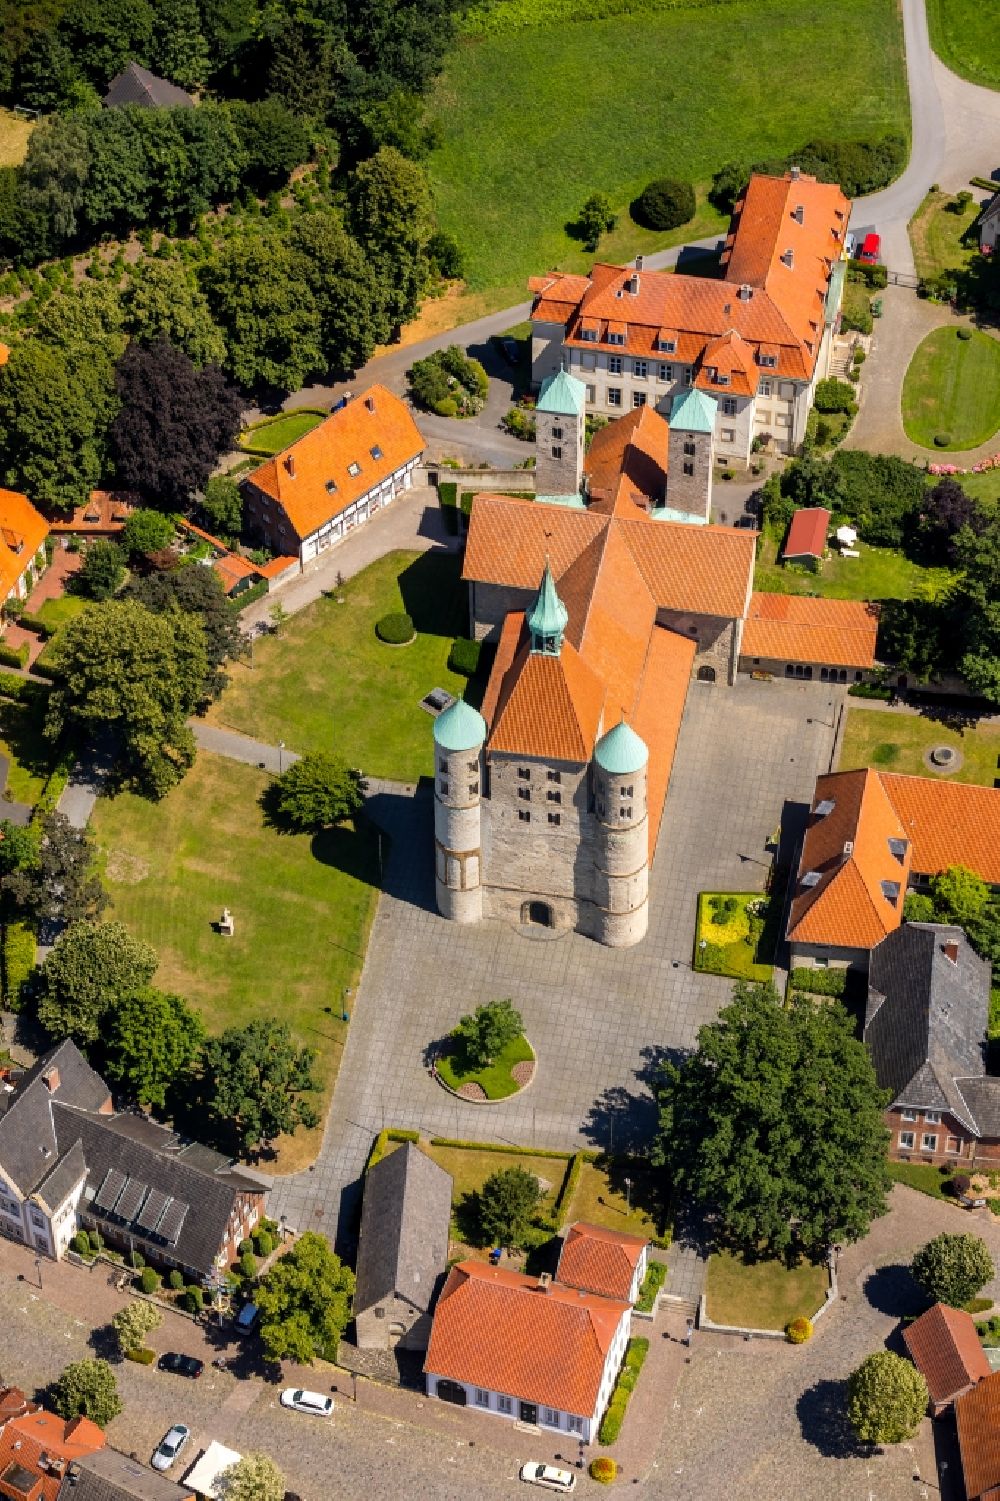 Freckenhorst von oben - Kirchenturm am Kirchengebäude - Schloß Freckenhorst im Bundesland Nordrhein-Westfalen, Deutschland